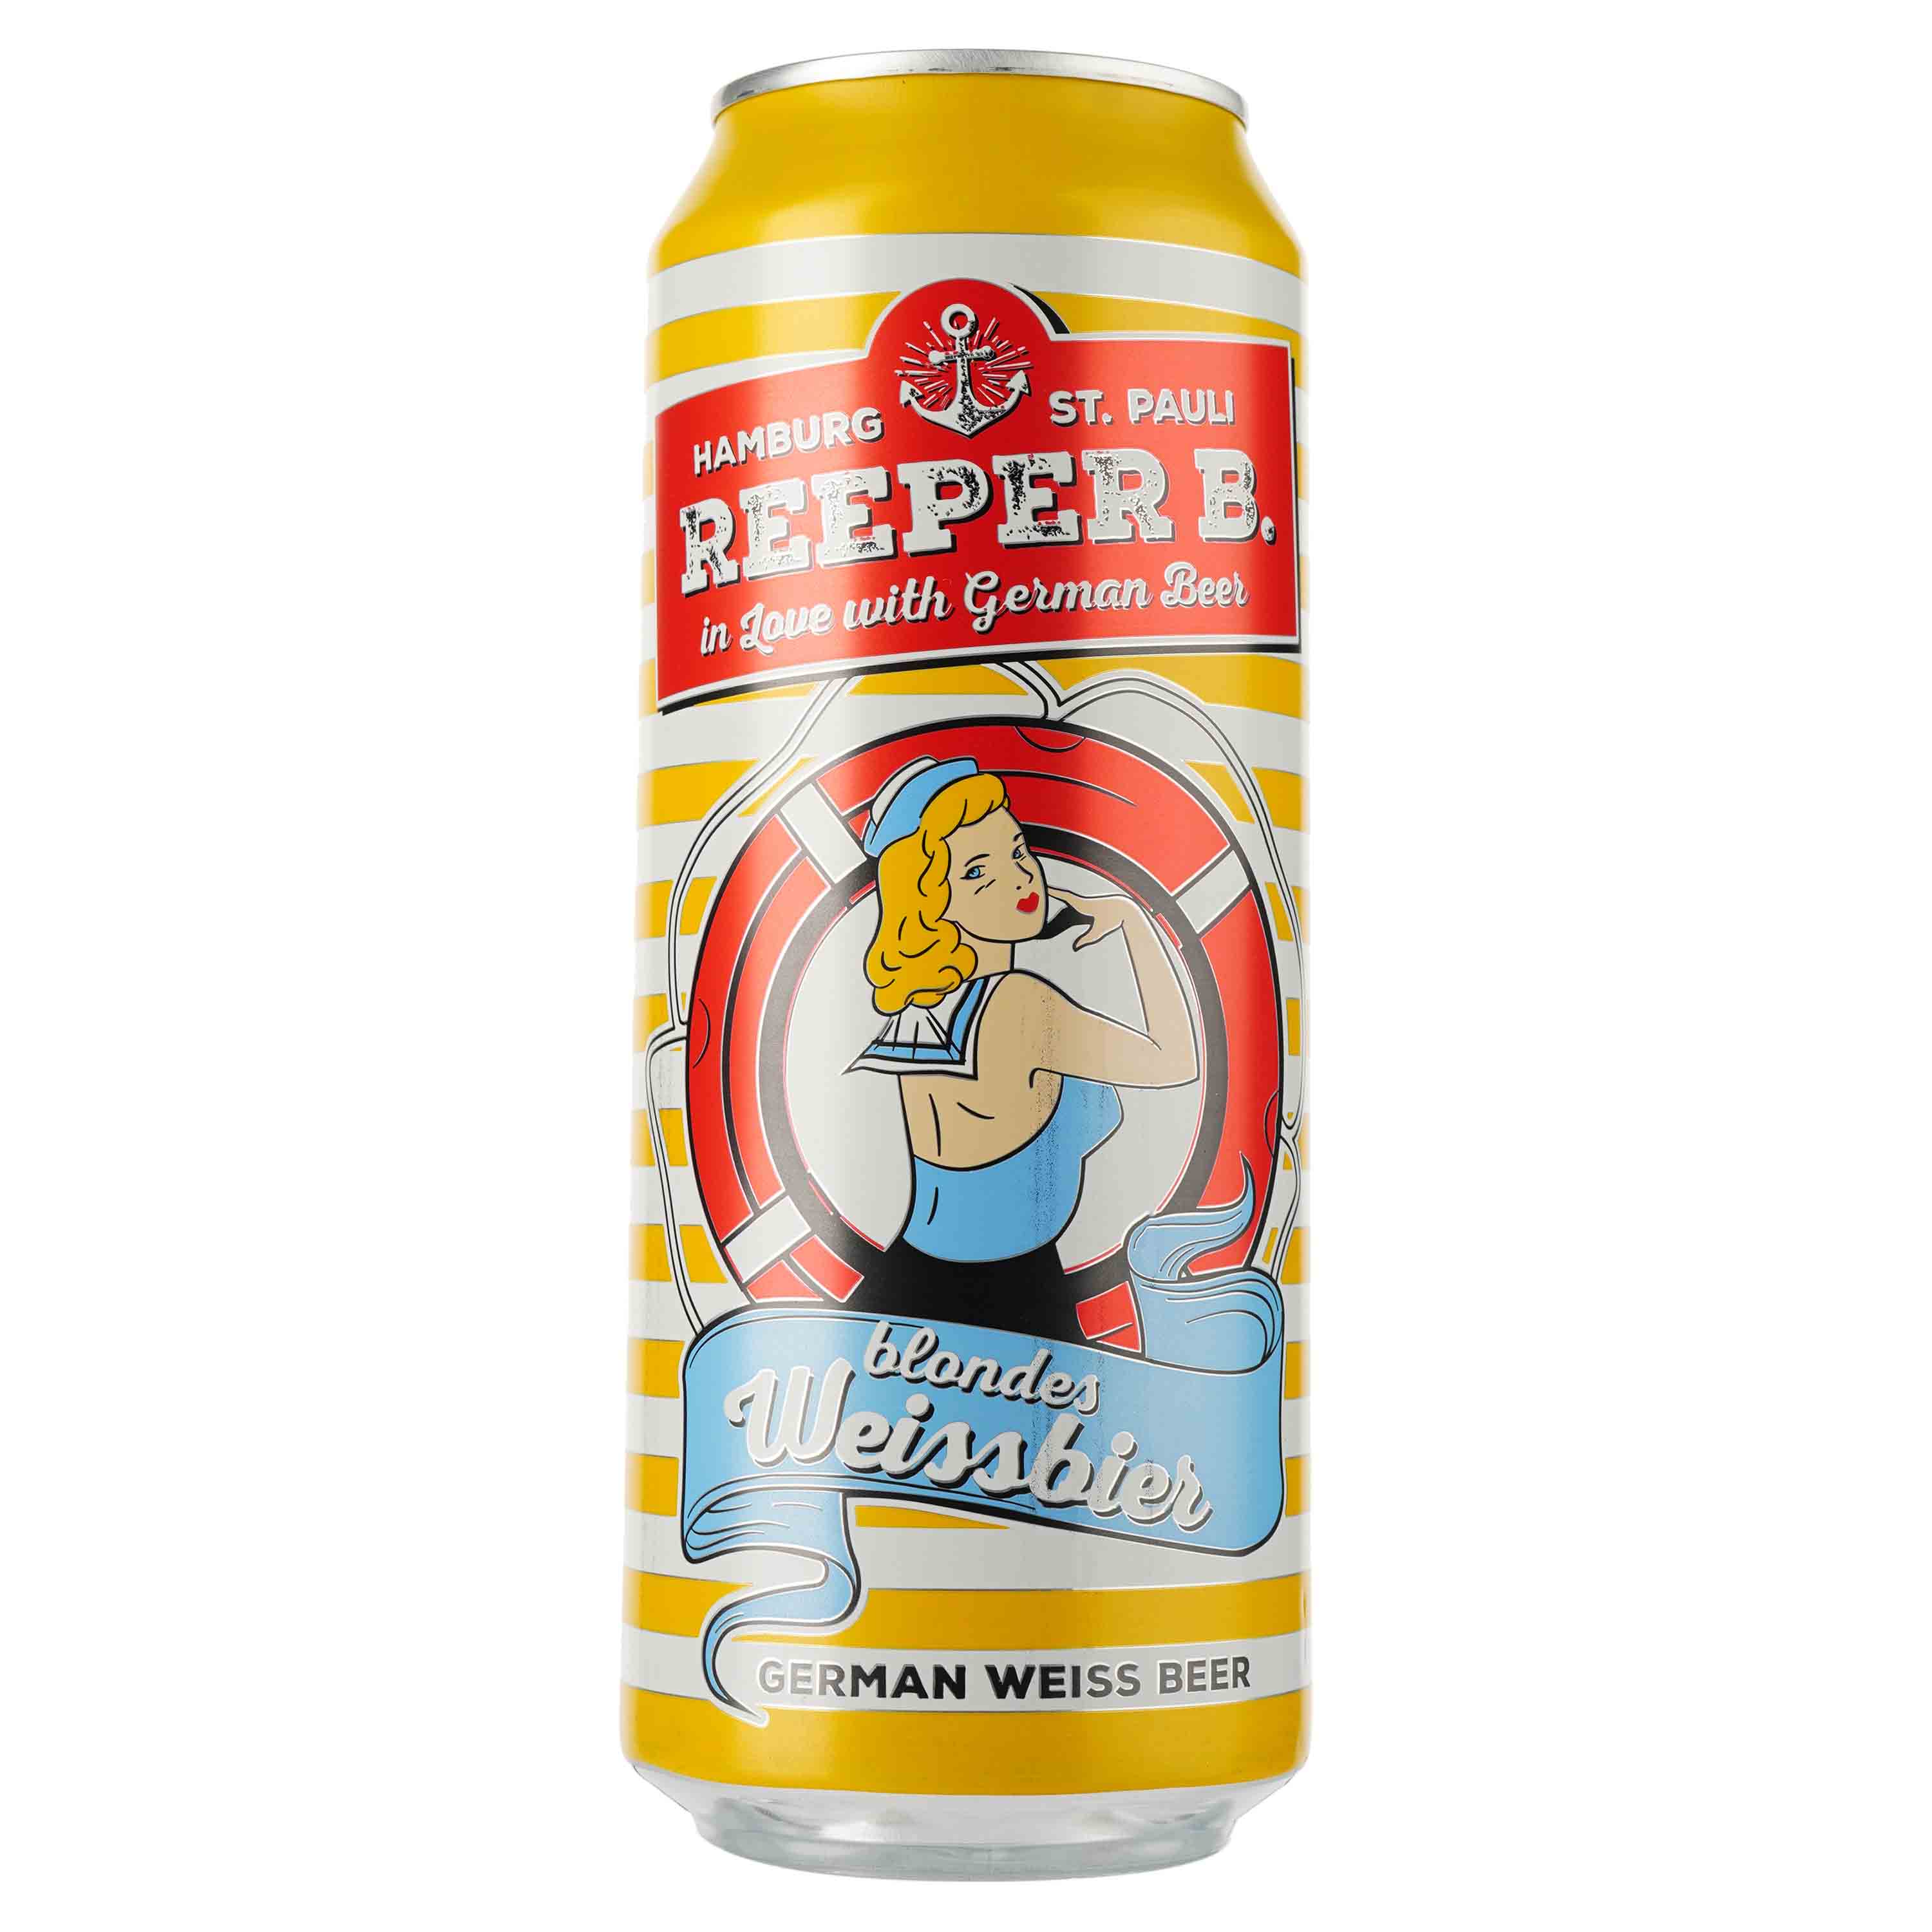 Пиво Reeper B Blondes Weissbier, светлое, нефильтрованное, 5,4%, ж/б, 0,5 л - фото 1